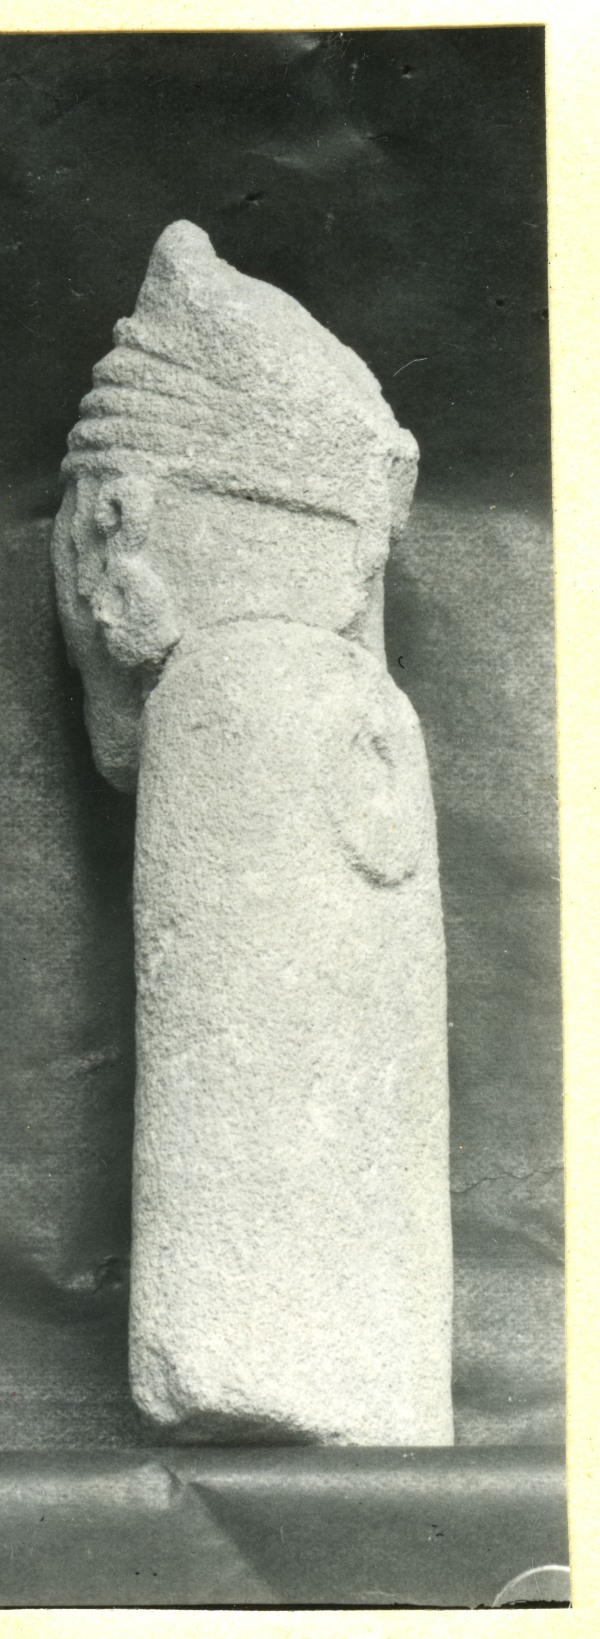 Plano posterior de escultura de dama enjoyada hallada en el Santuario de El Cigarralejo (exvoto nº 4).